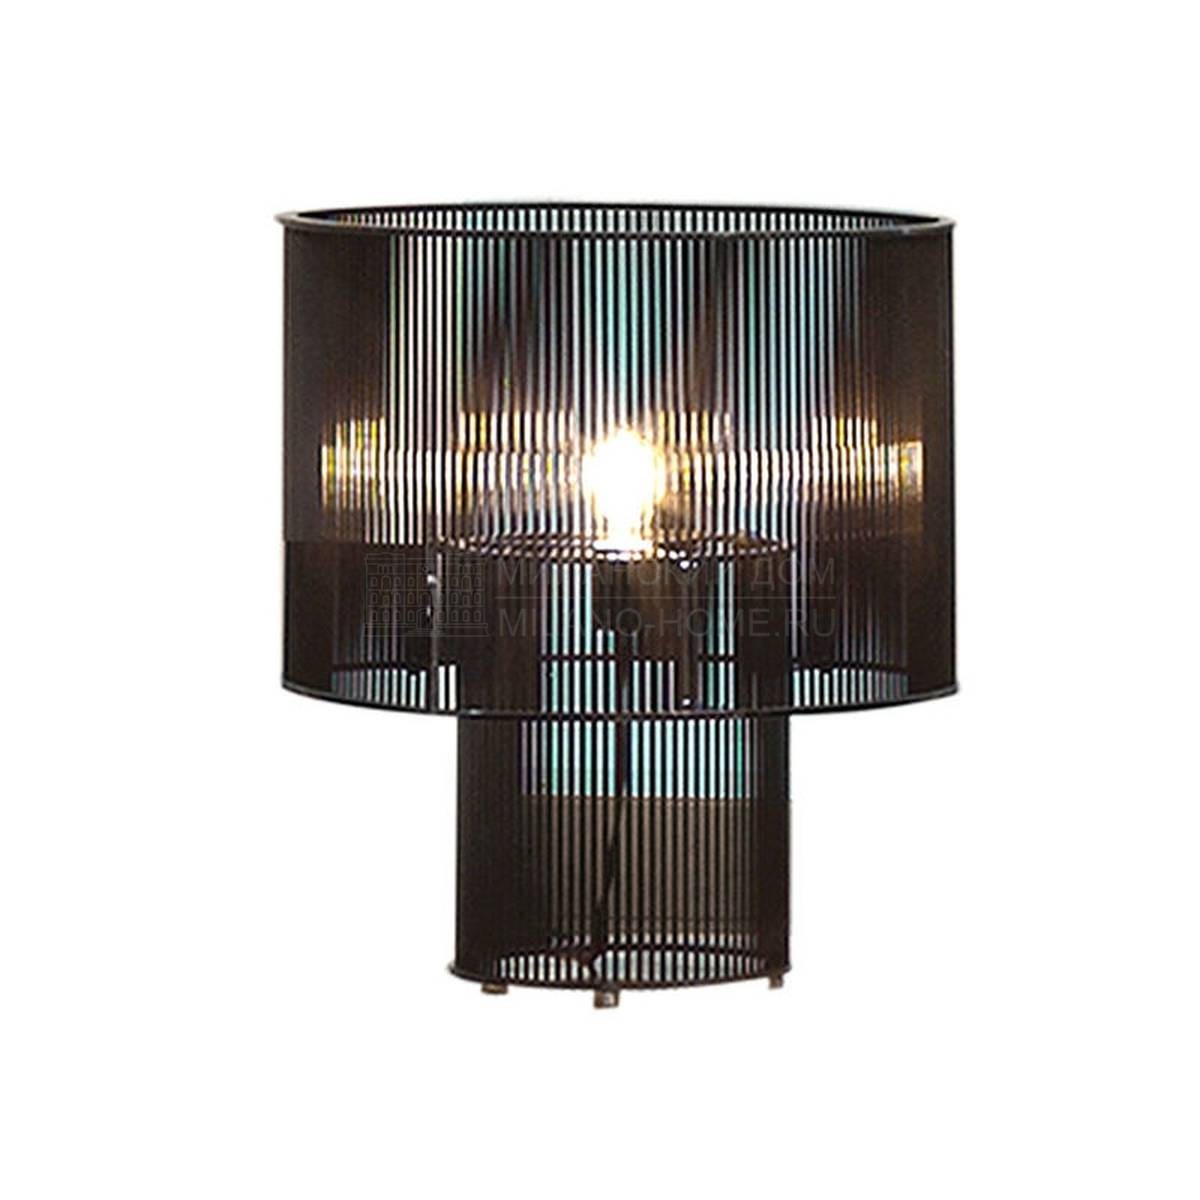 Настольная лампа Ulysse AL 743-744 light из Италии фабрики ELLEDUE